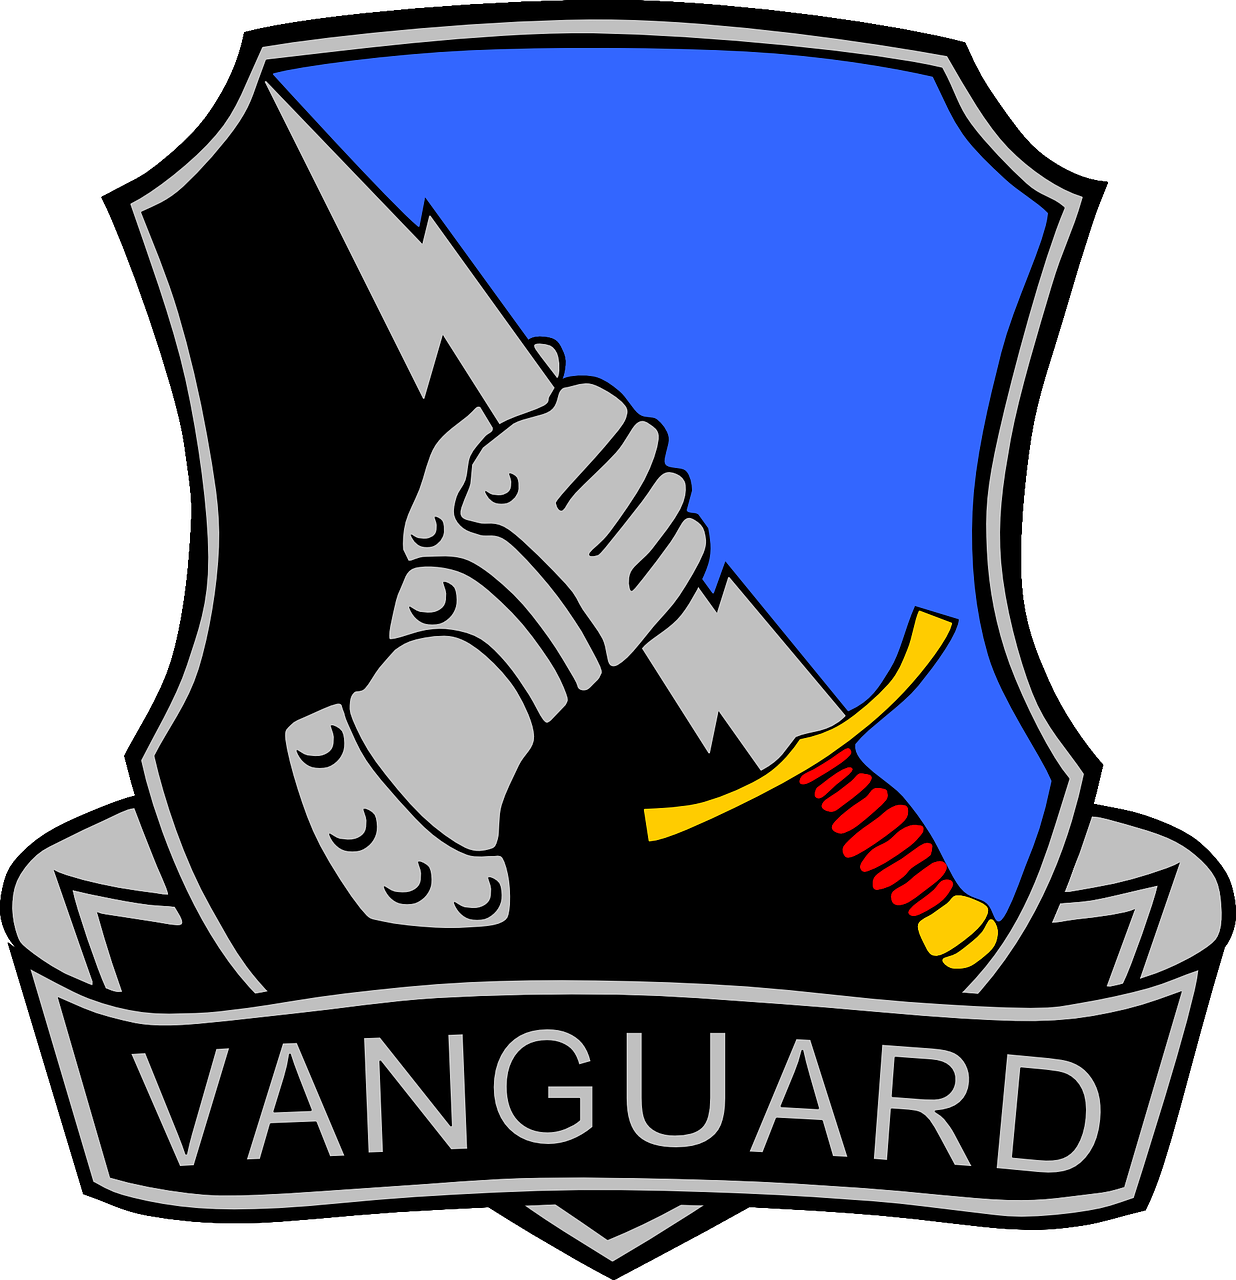 Vanguard’s opening salvo in the passive/active combination battle